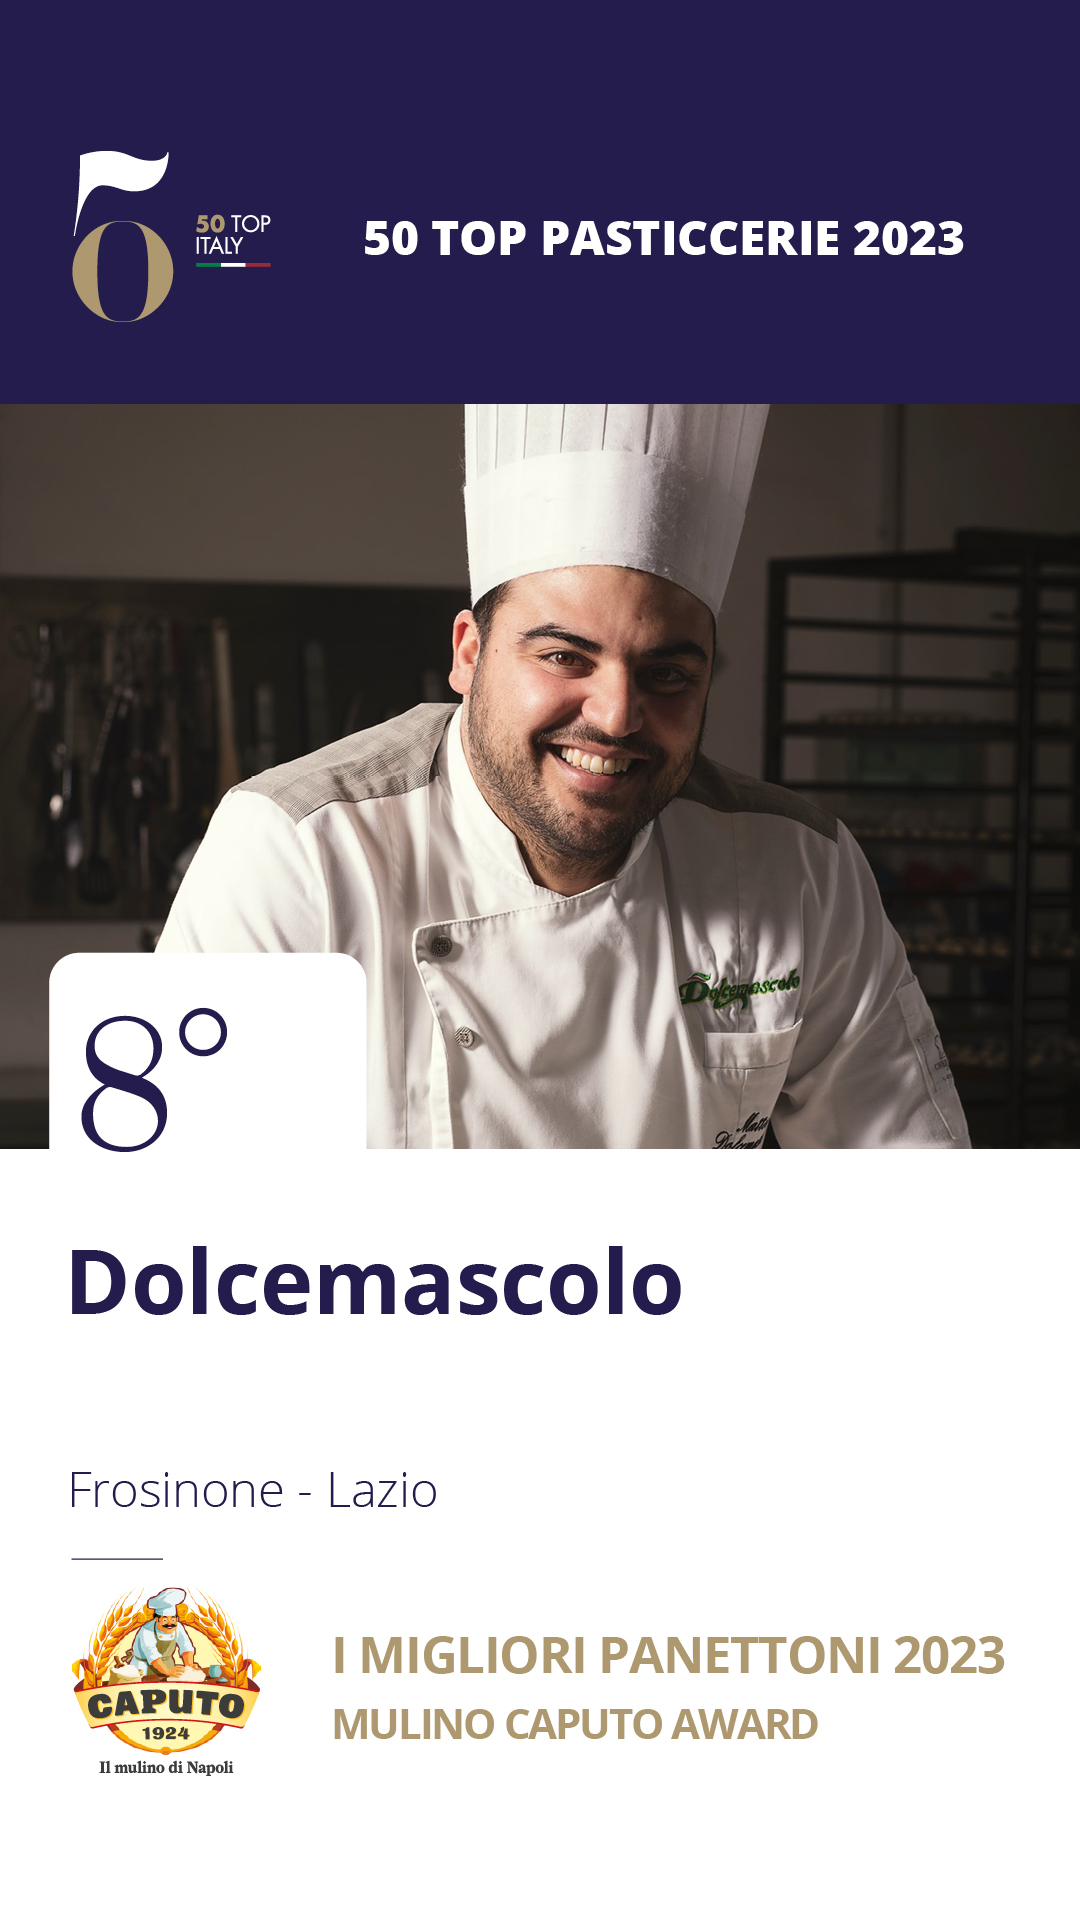 8 - Dolcemascolo - Frosinone, Lazio